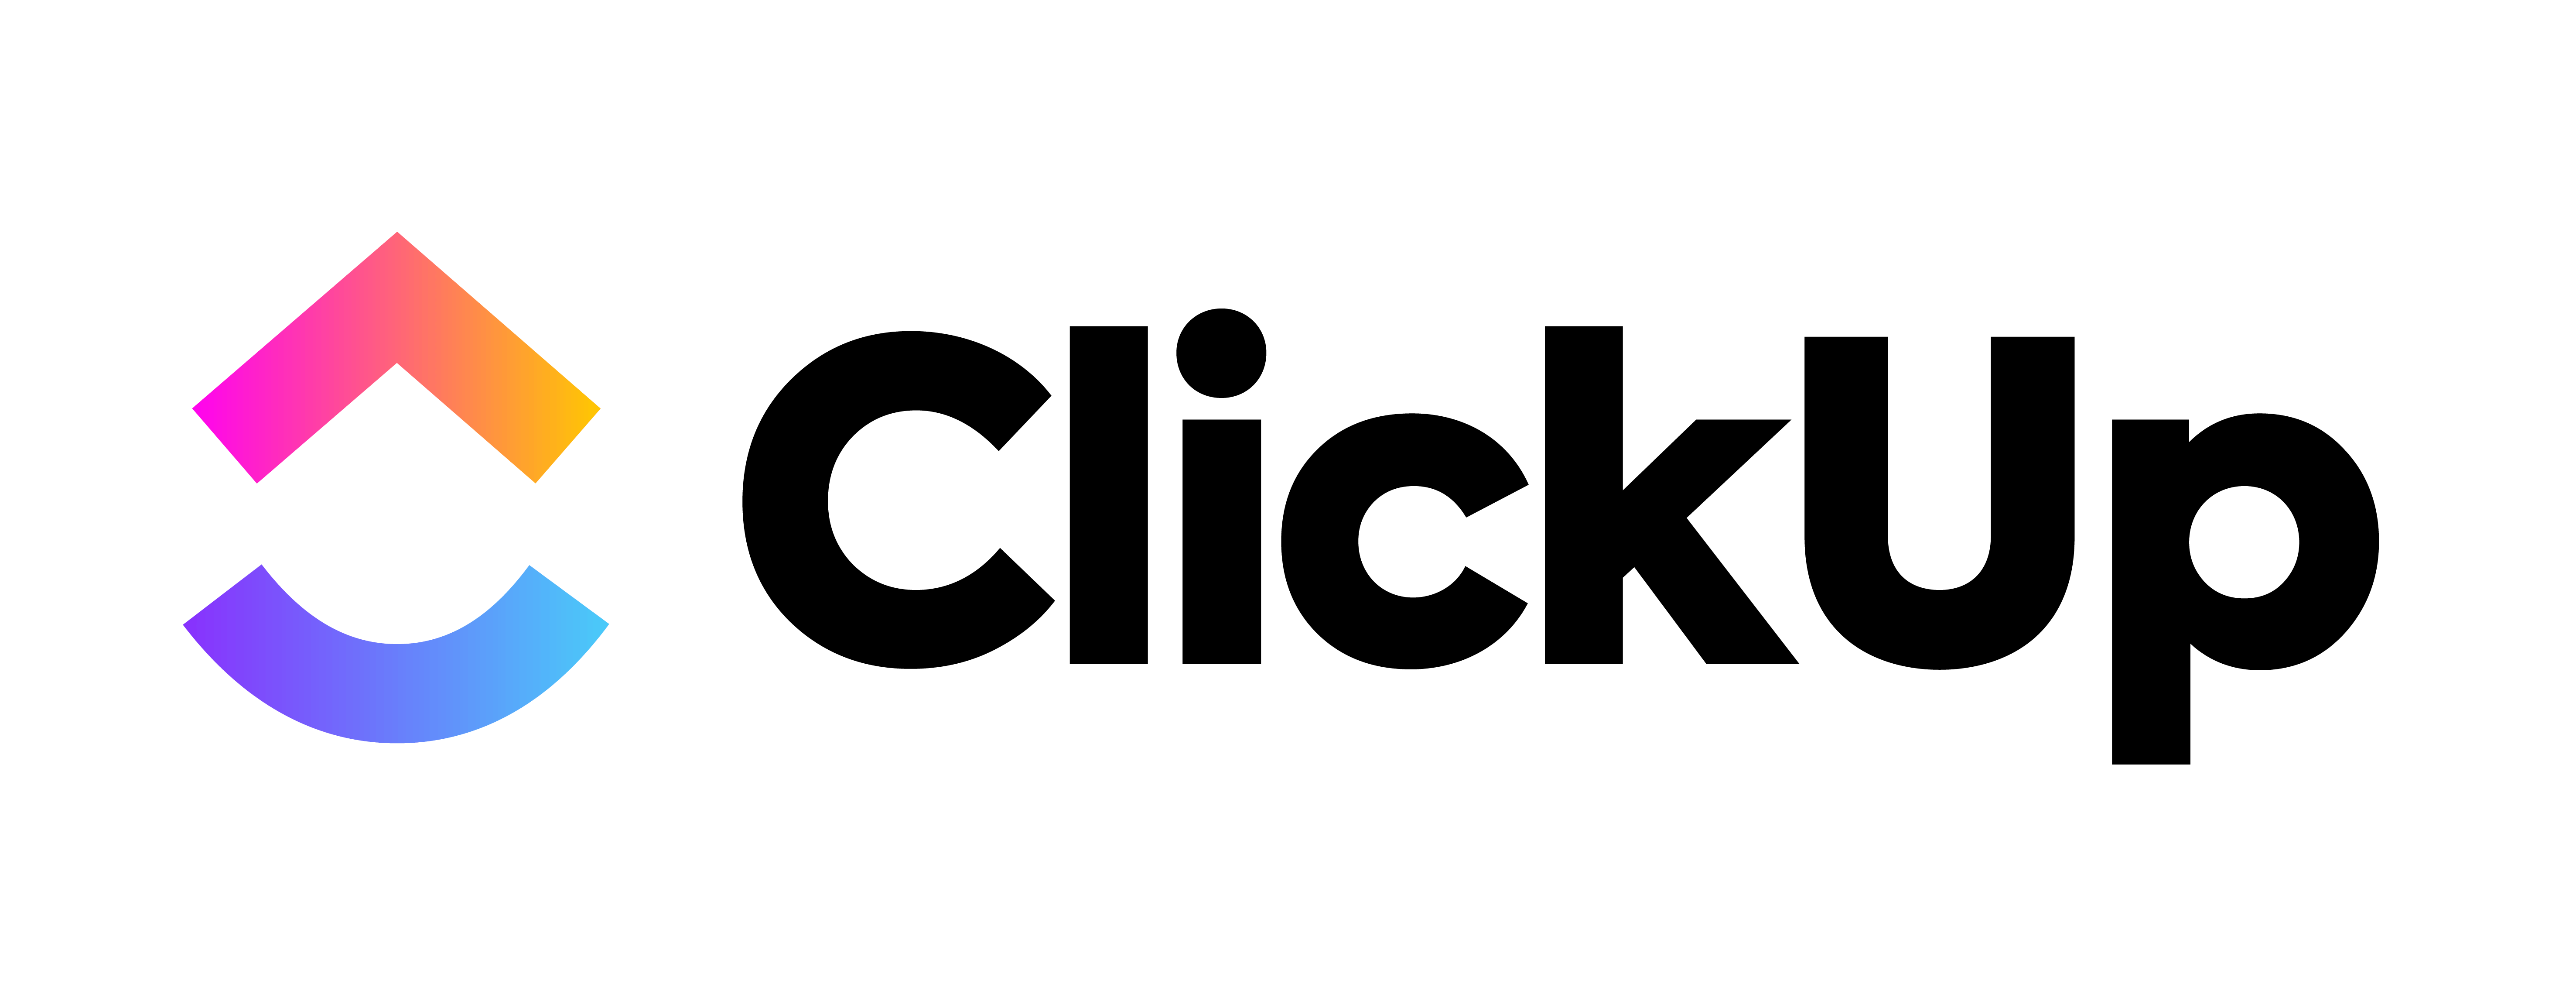 ClickUp versus Airtable |  Developer.com